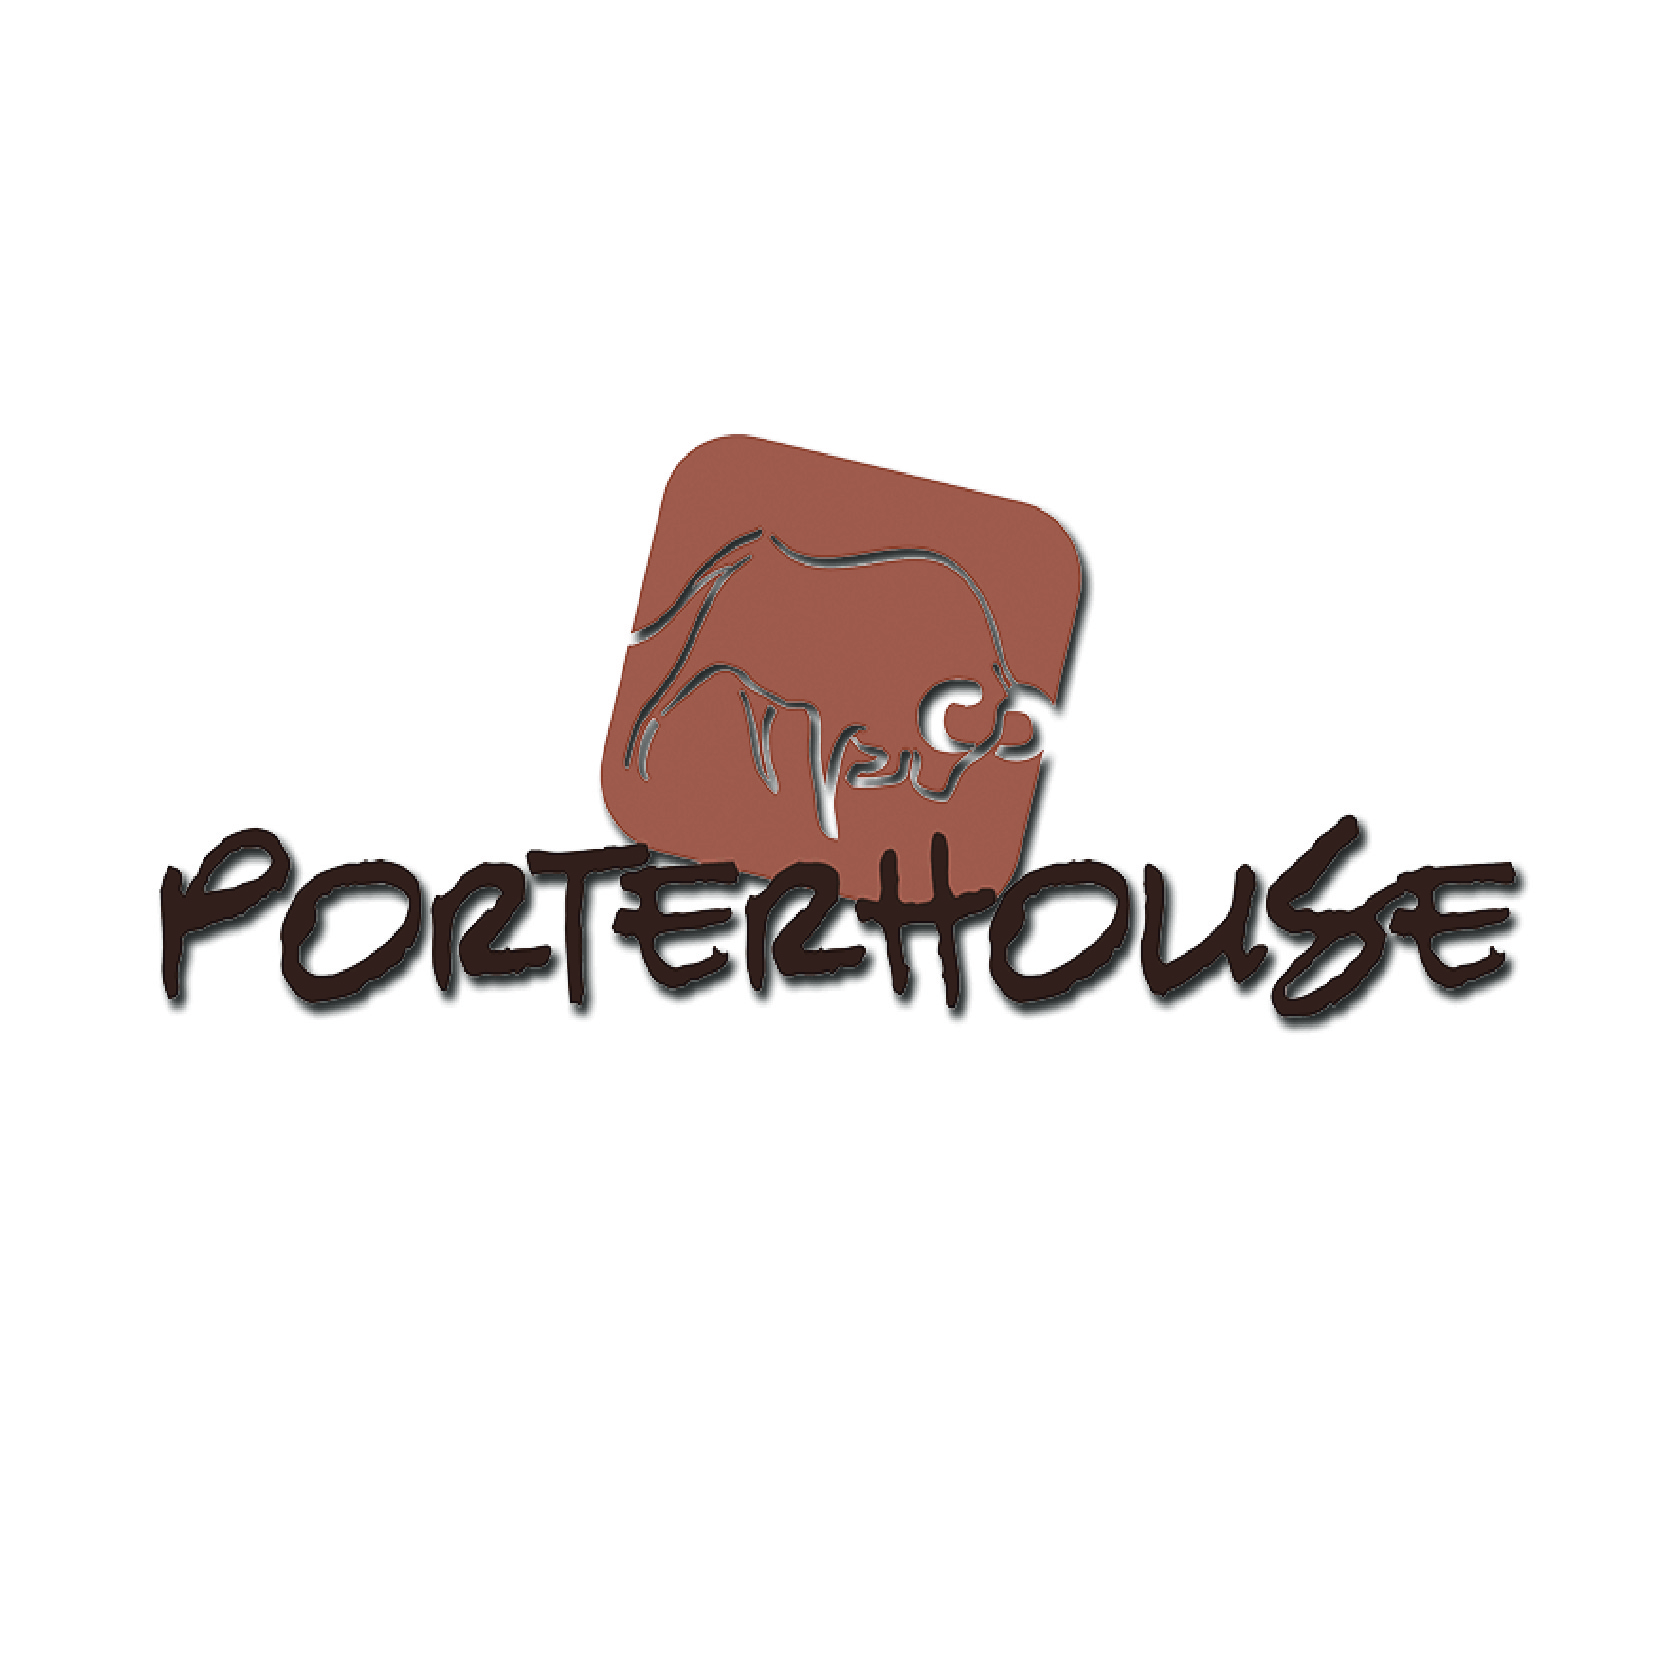 Porterhouse Restaurant 